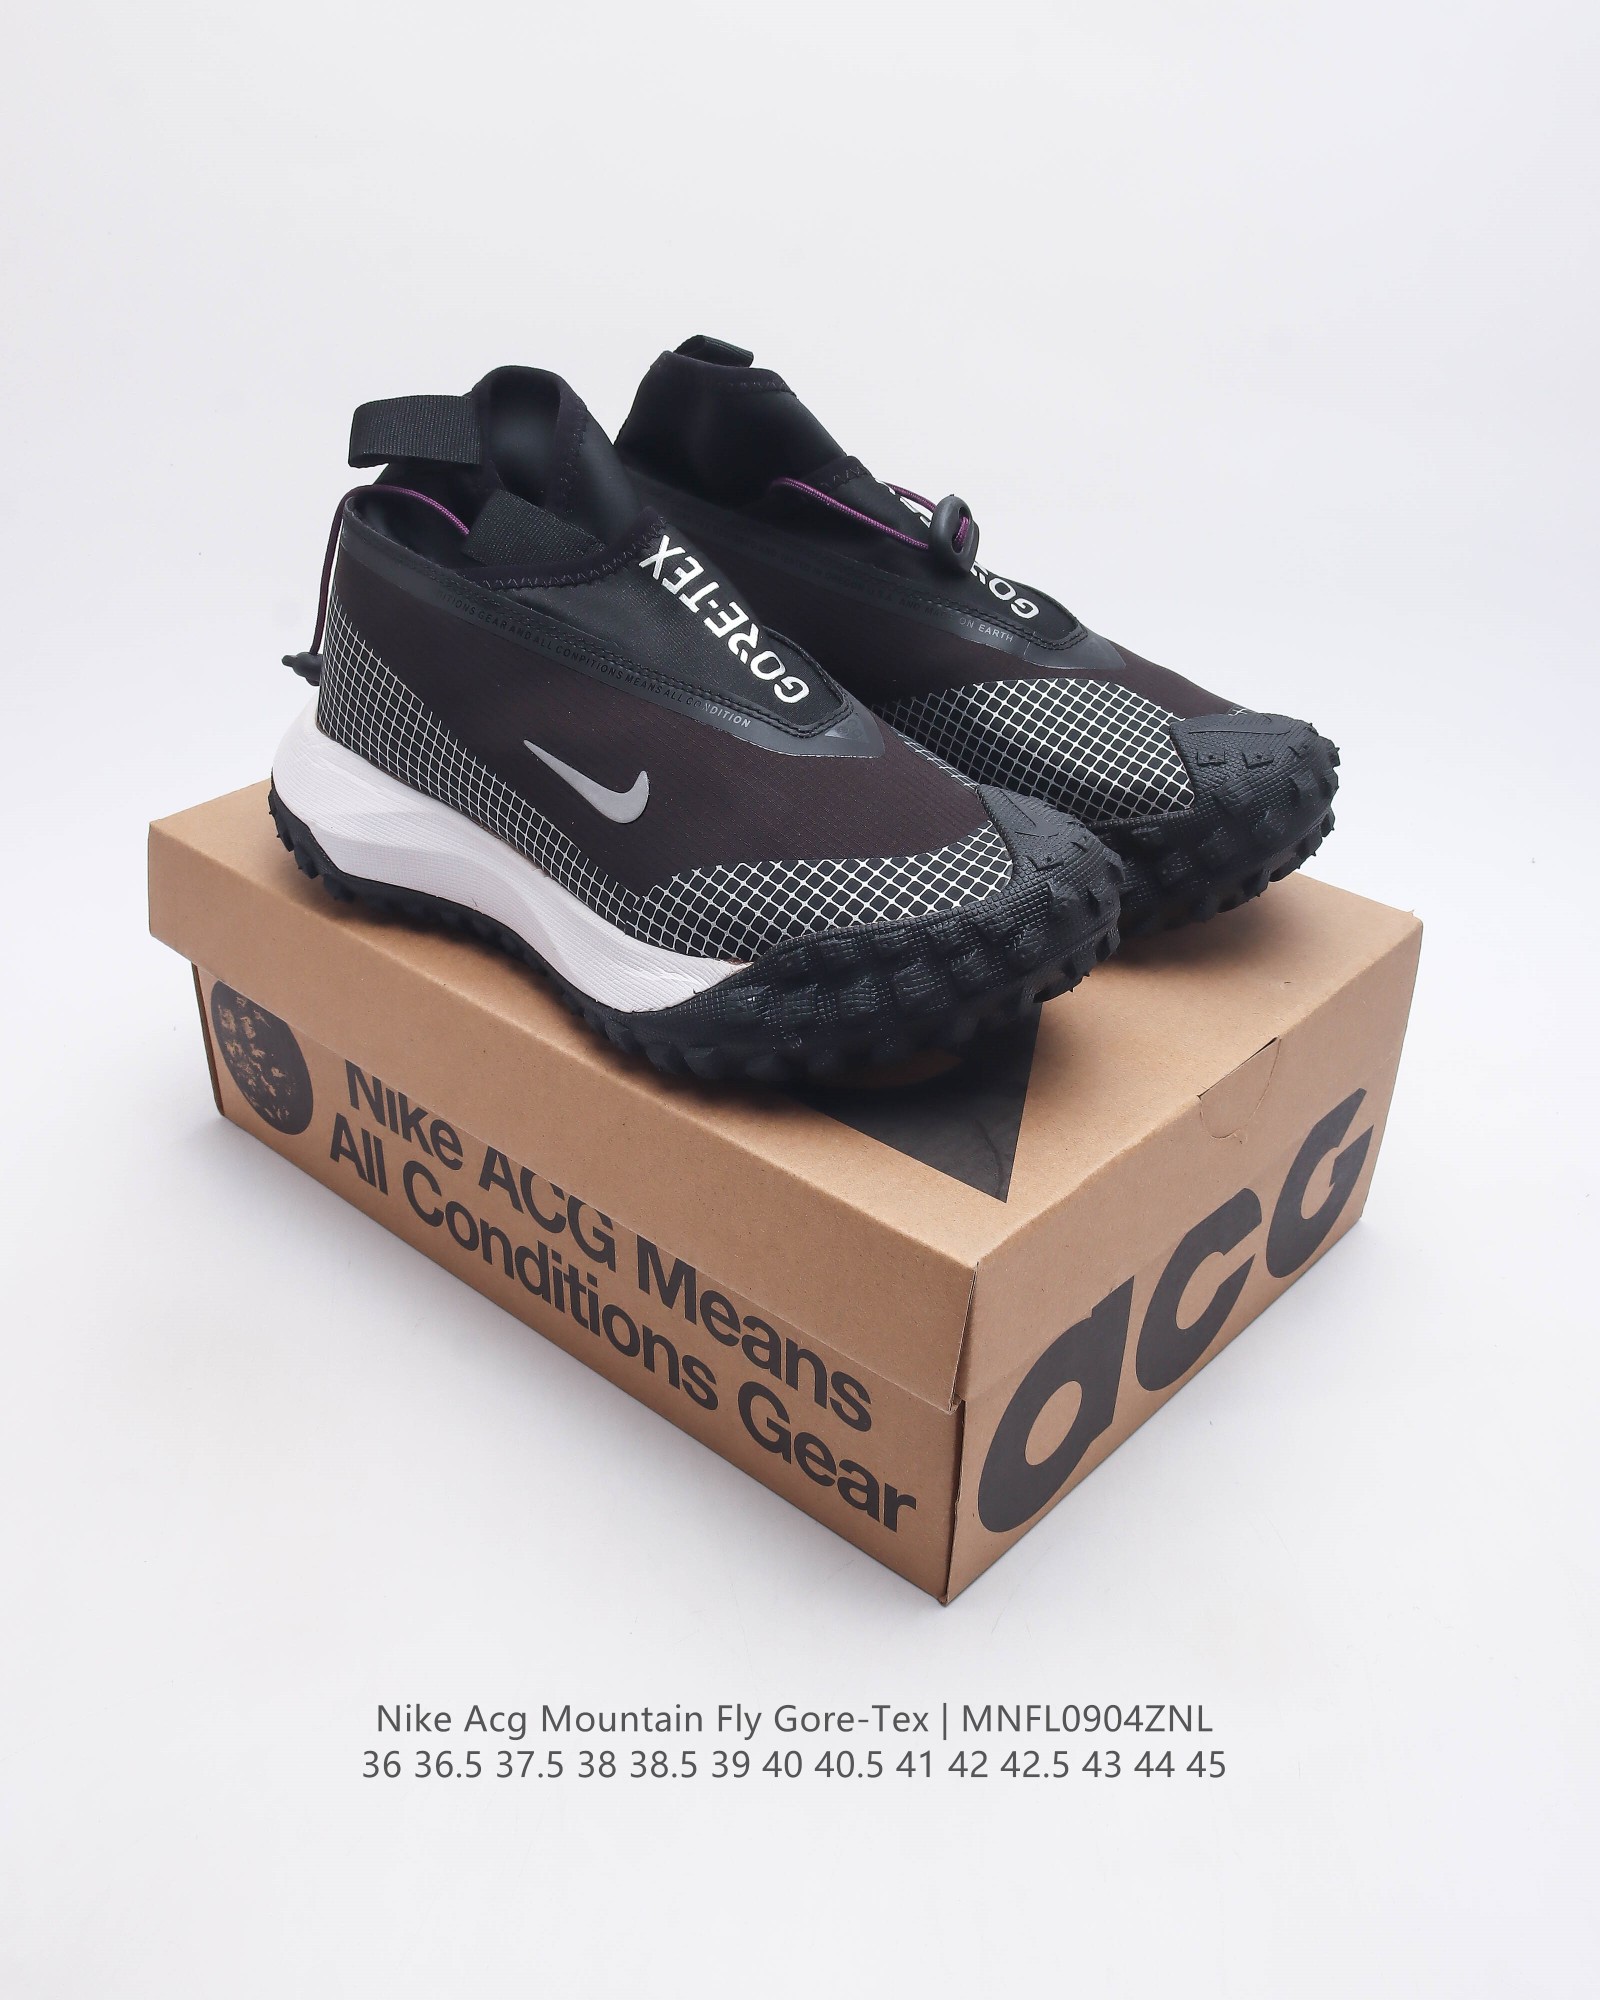 耐克 Nike Acg Mountain Fly Gore-Tex 机能风格跑步鞋休闲运动鞋 采用匠心设计 打造耐穿迅疾风格 让你在沙漠 峡谷和深山中探险时也能